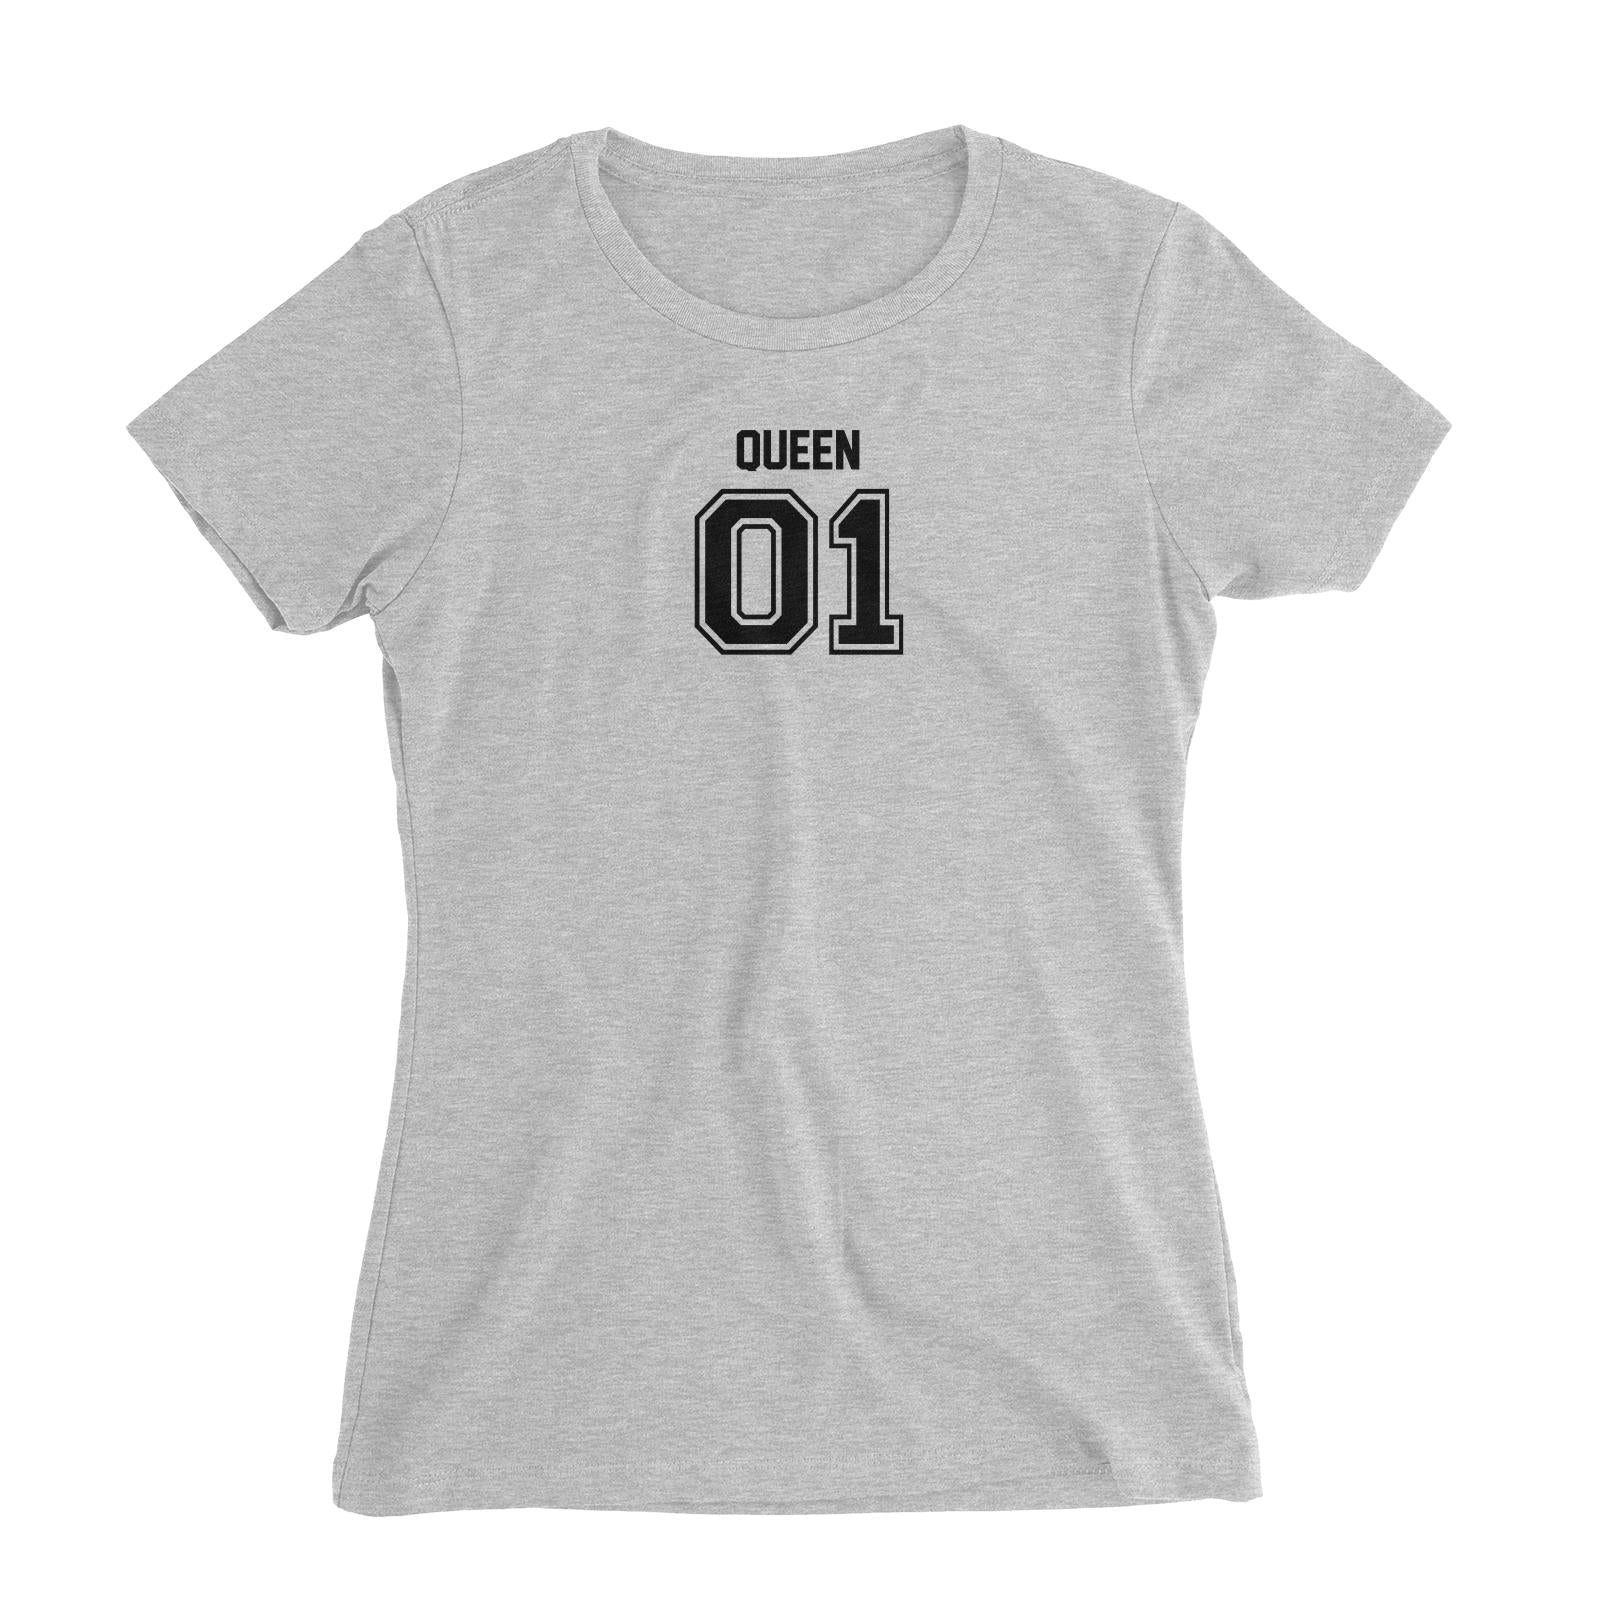 Jersey Adults Queen 01 Single Side Women's Slim Fit T-Shirt